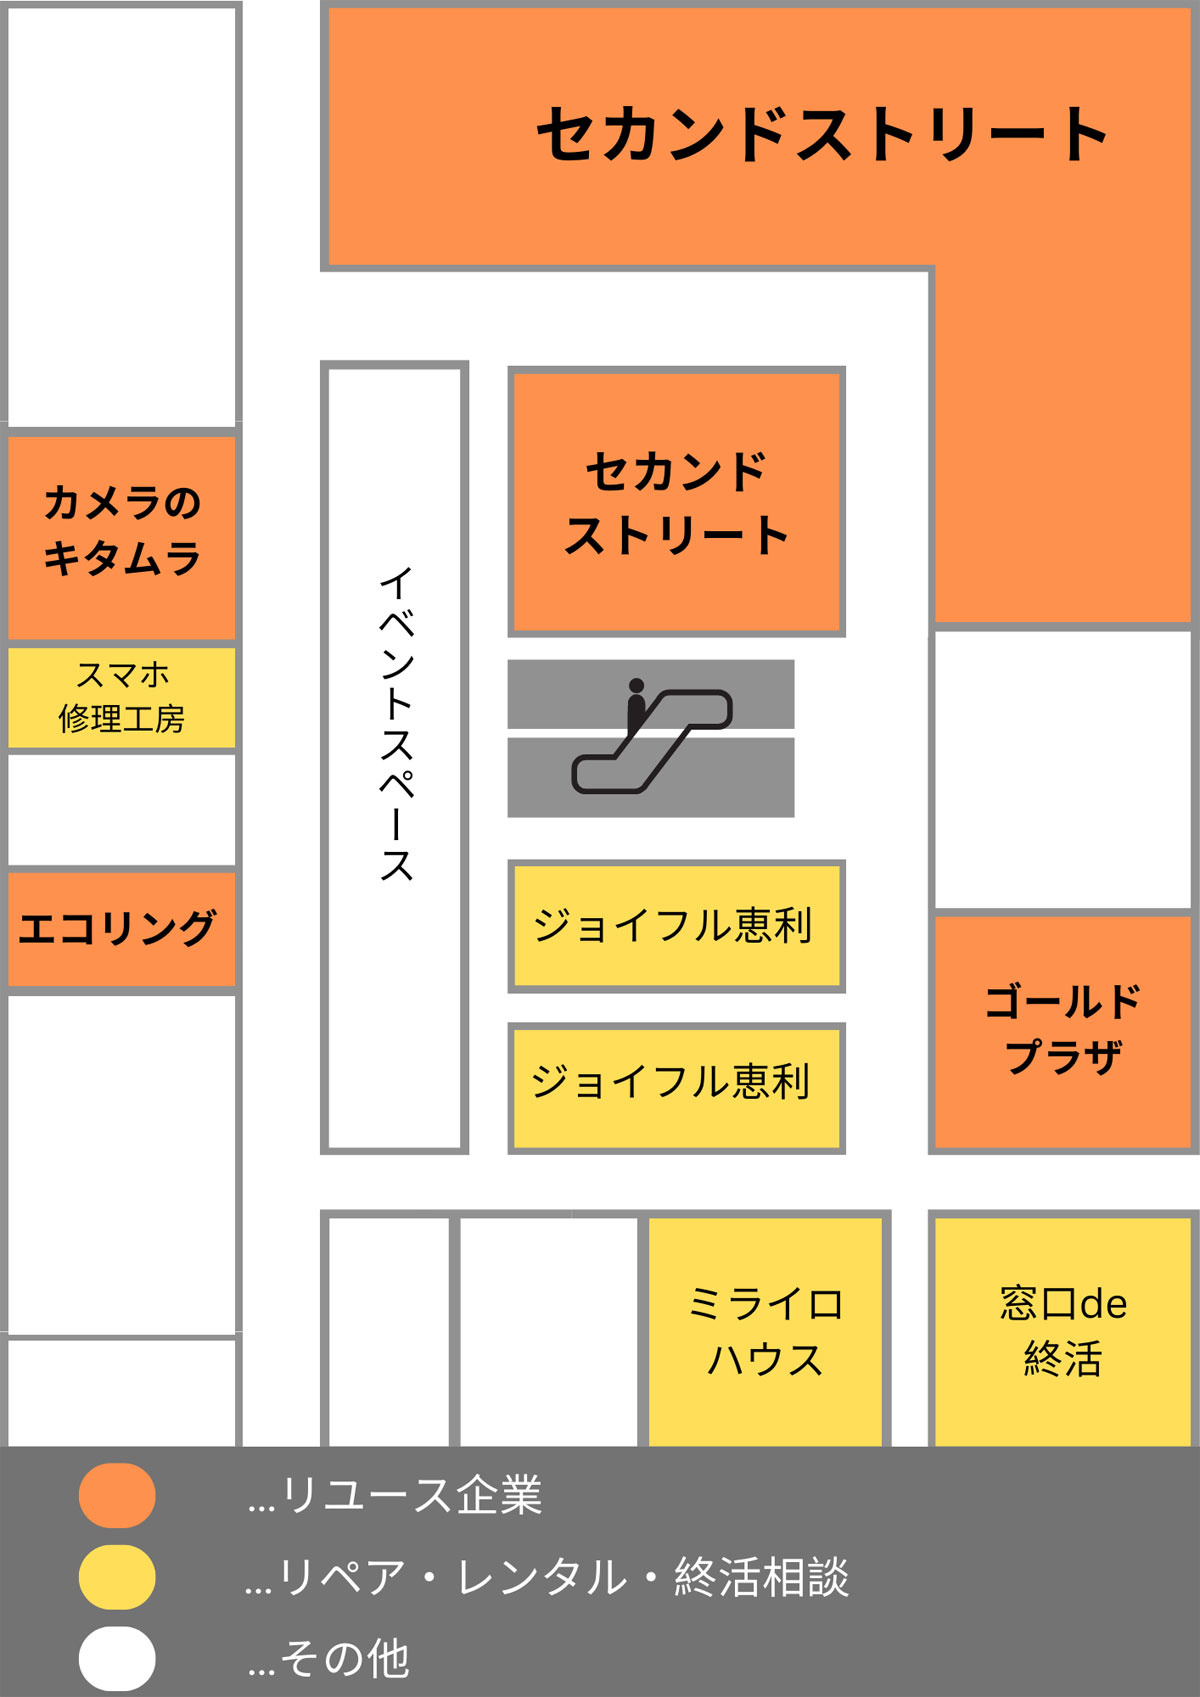 丸井錦糸町店の5階見取り図